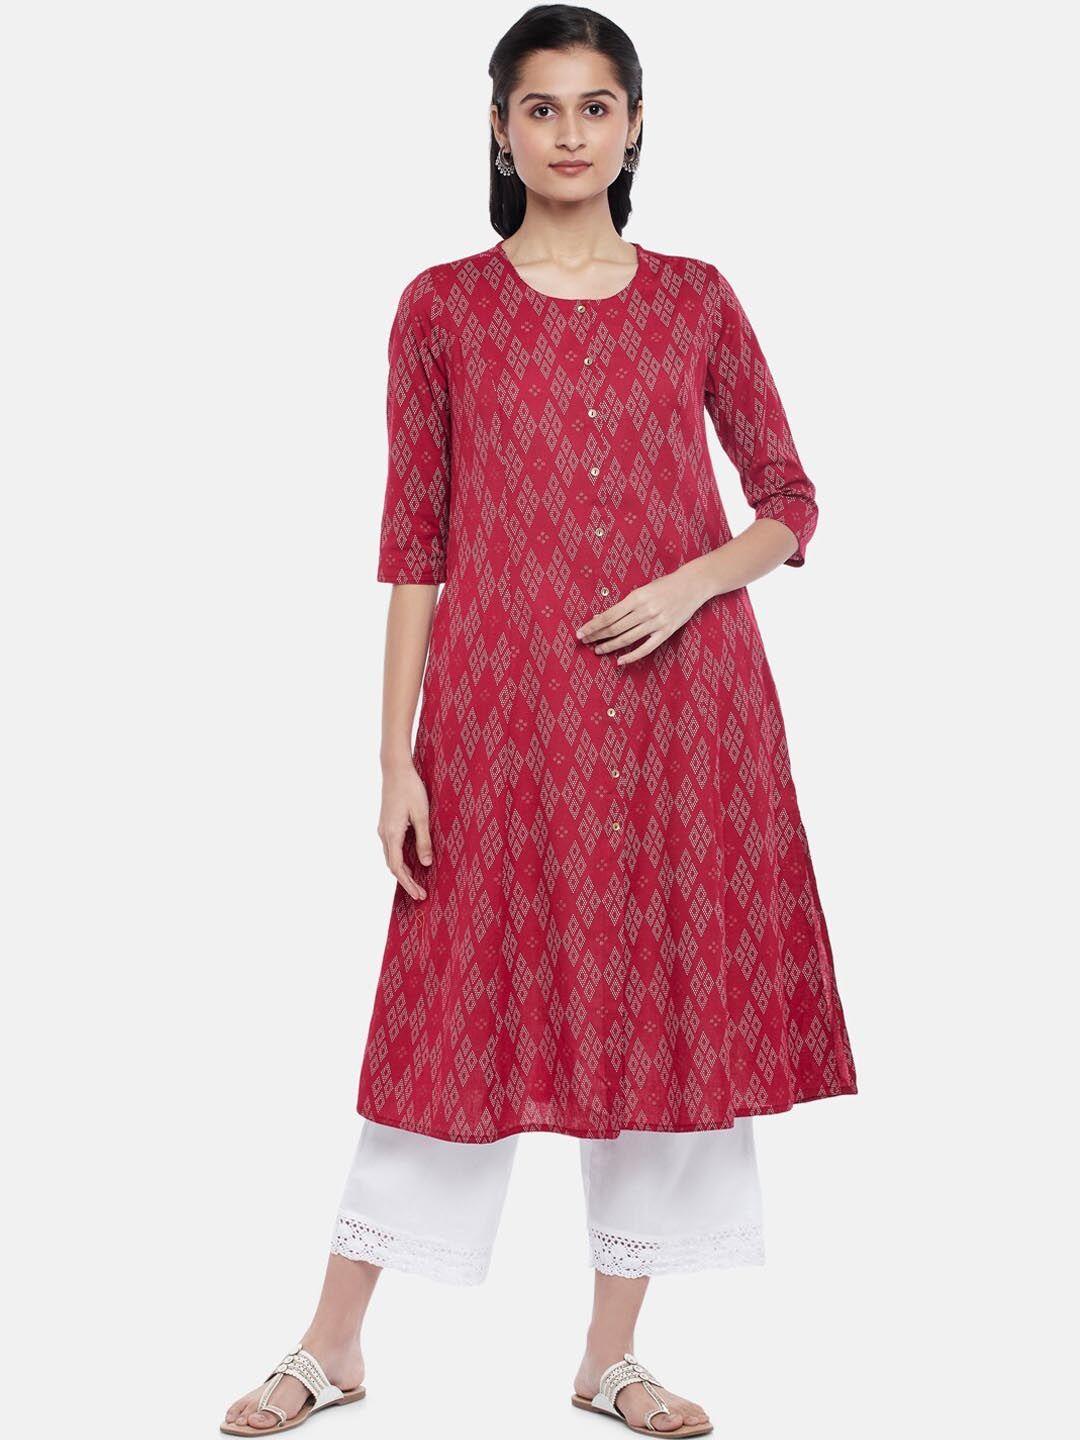 rangmanch by pantaloons women maroon & white geometric printed cotton a-line kurta